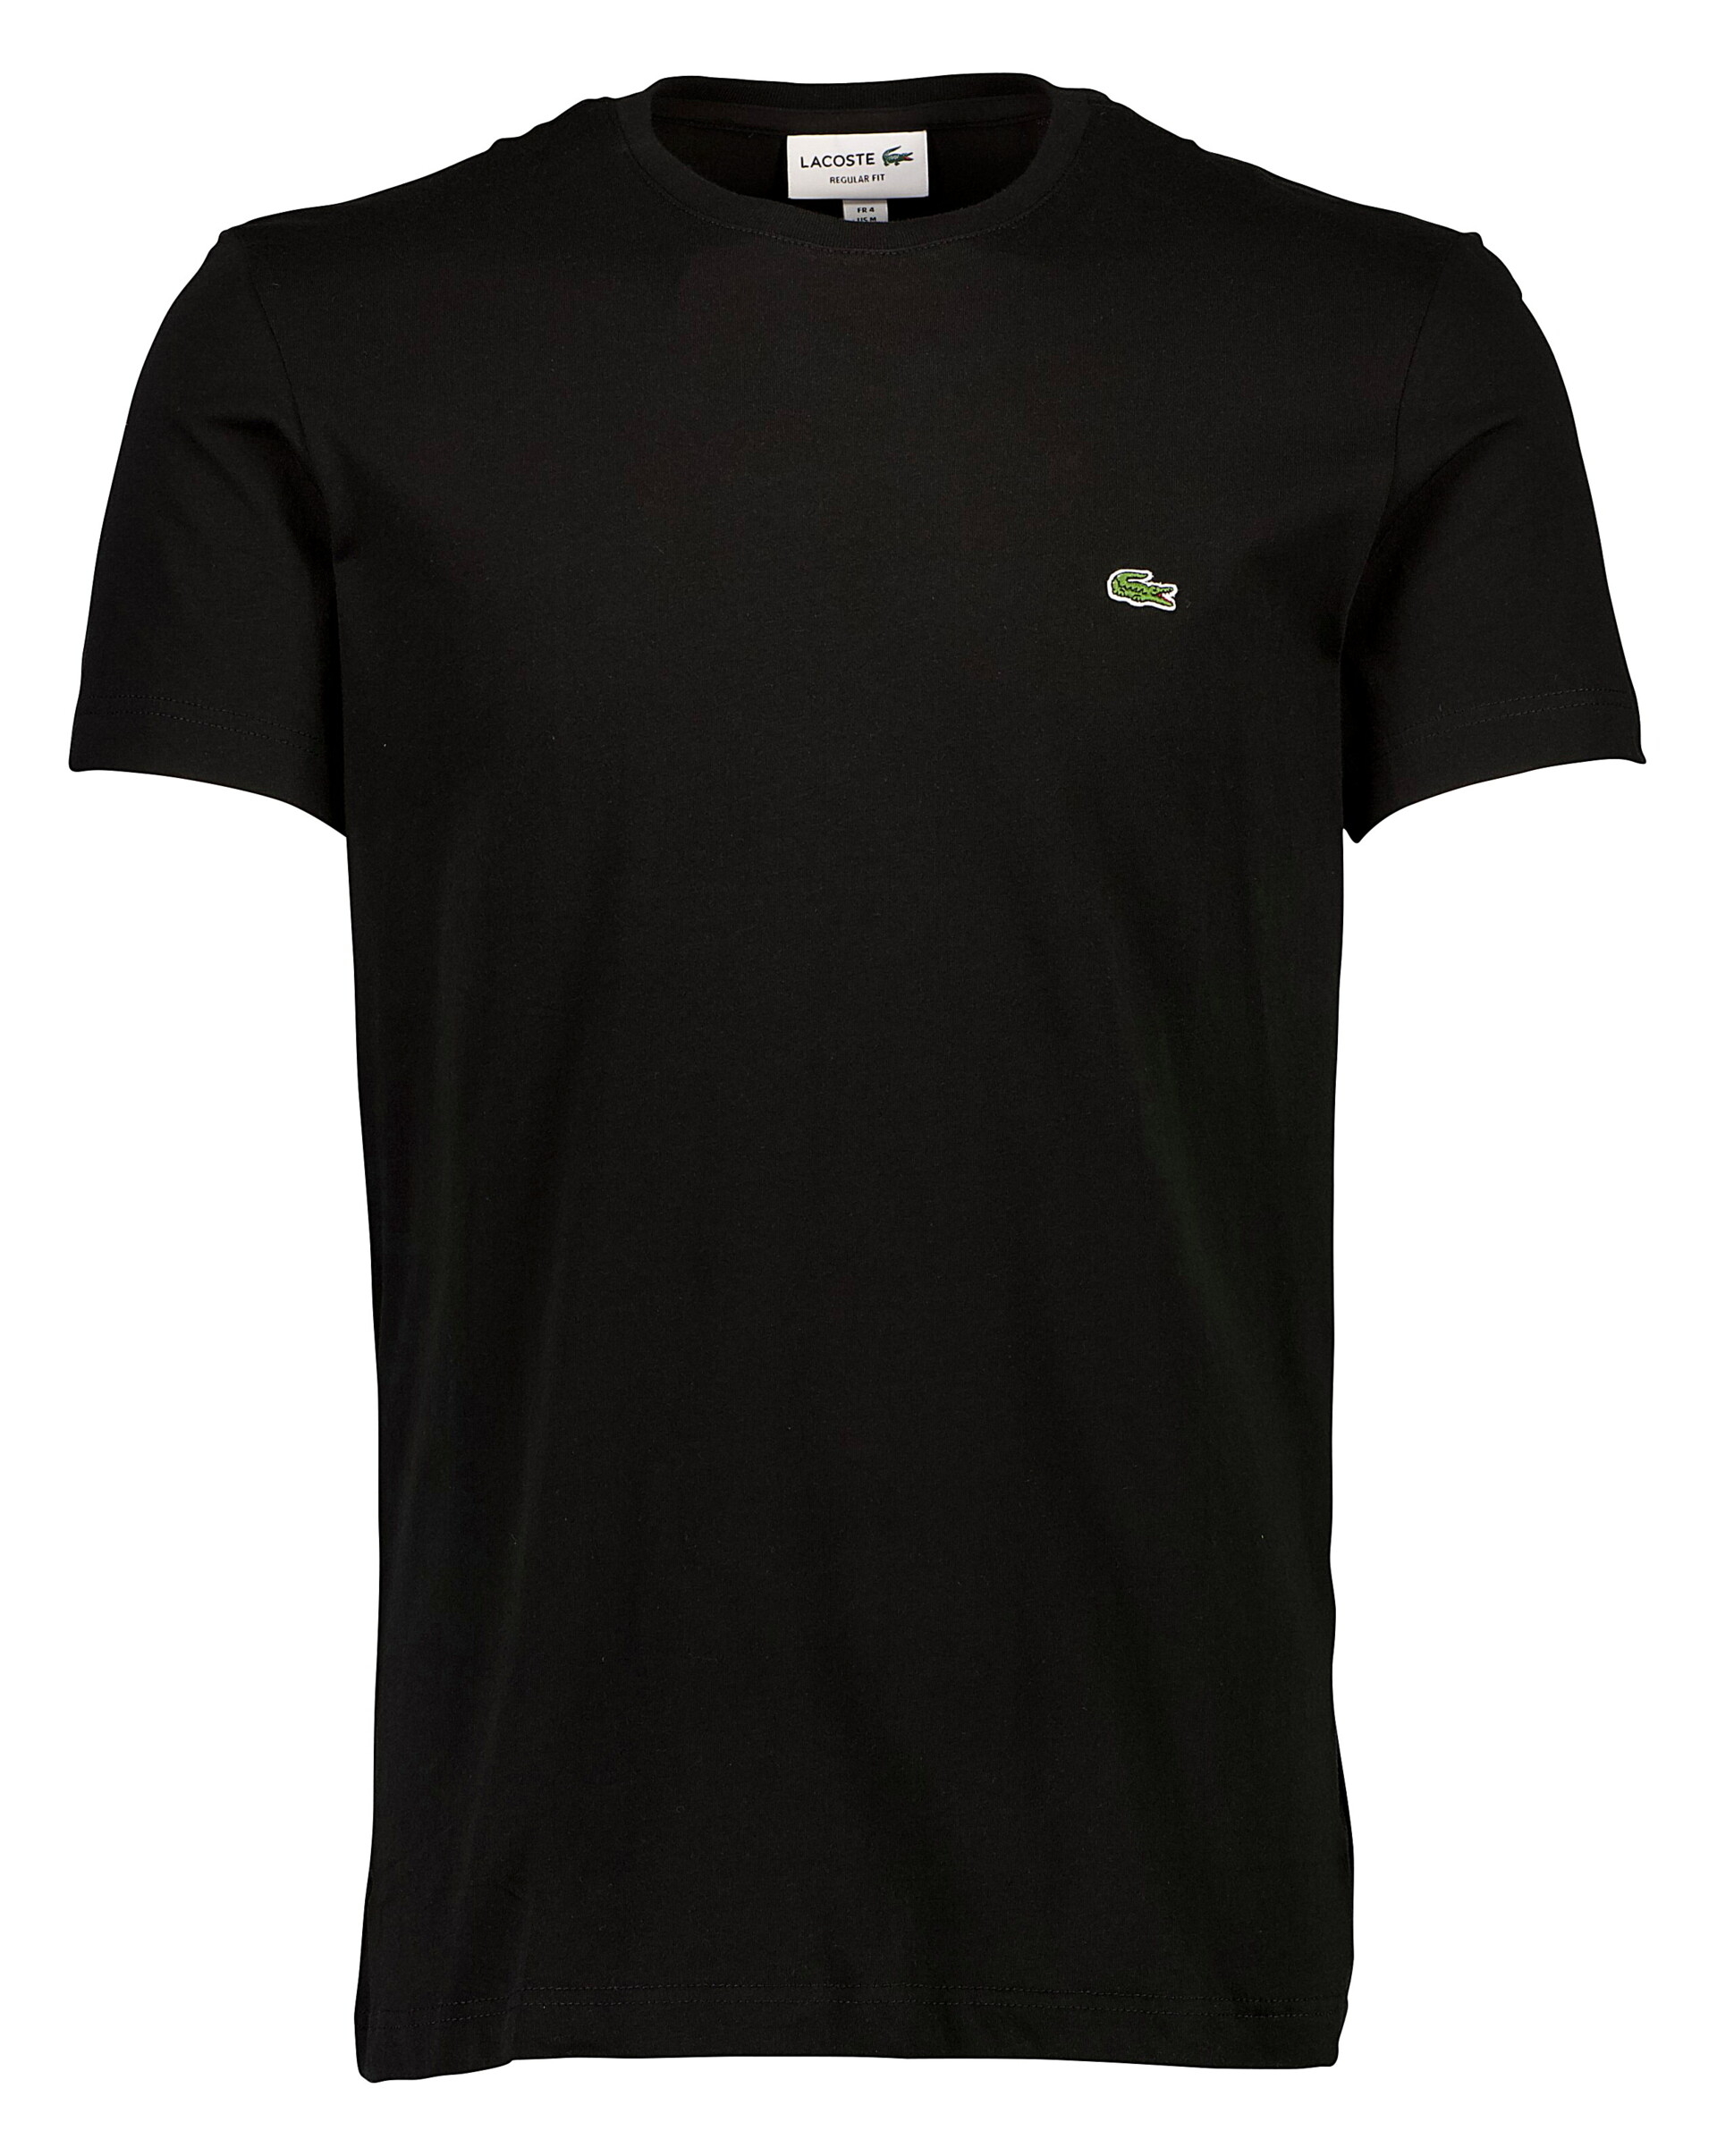 Lacoste T-shirt sort / 031-noir